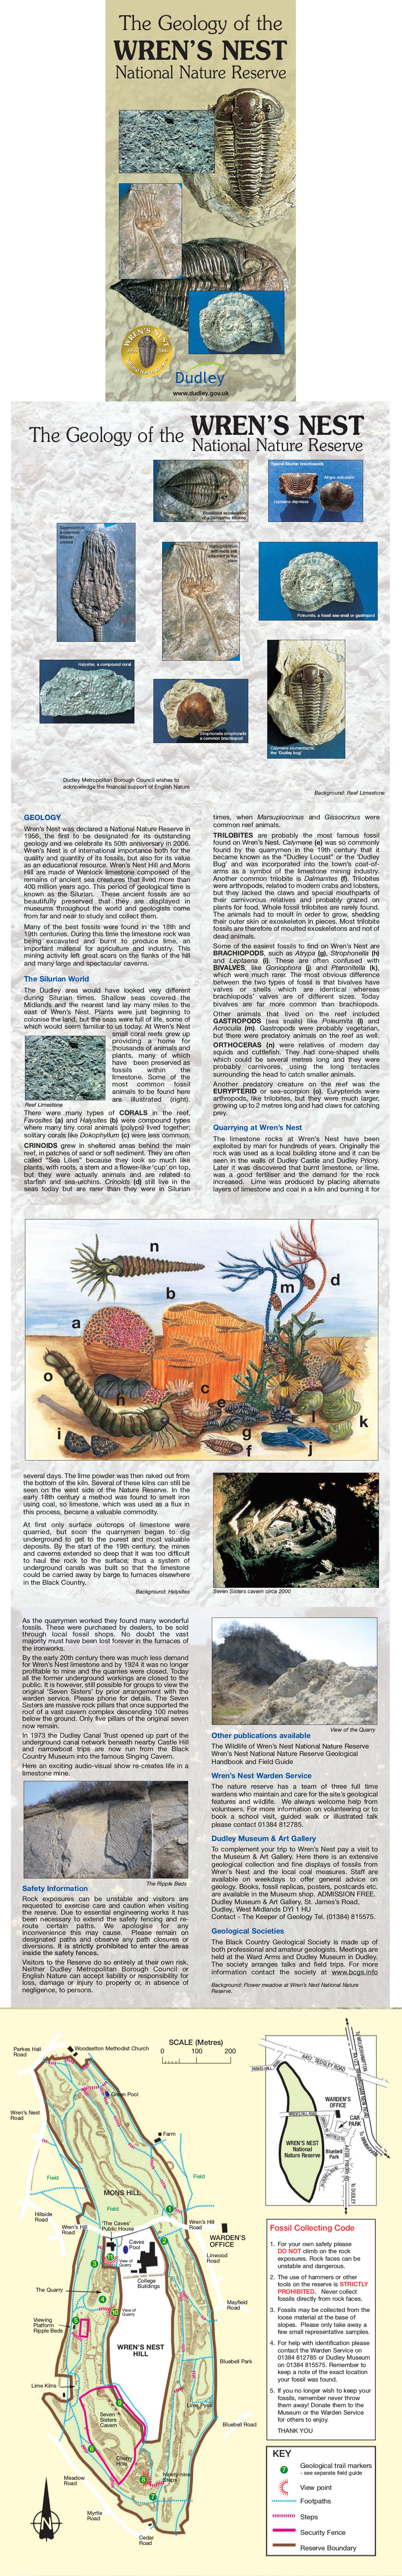 Wren's_Nest_geology_Leaflet2005